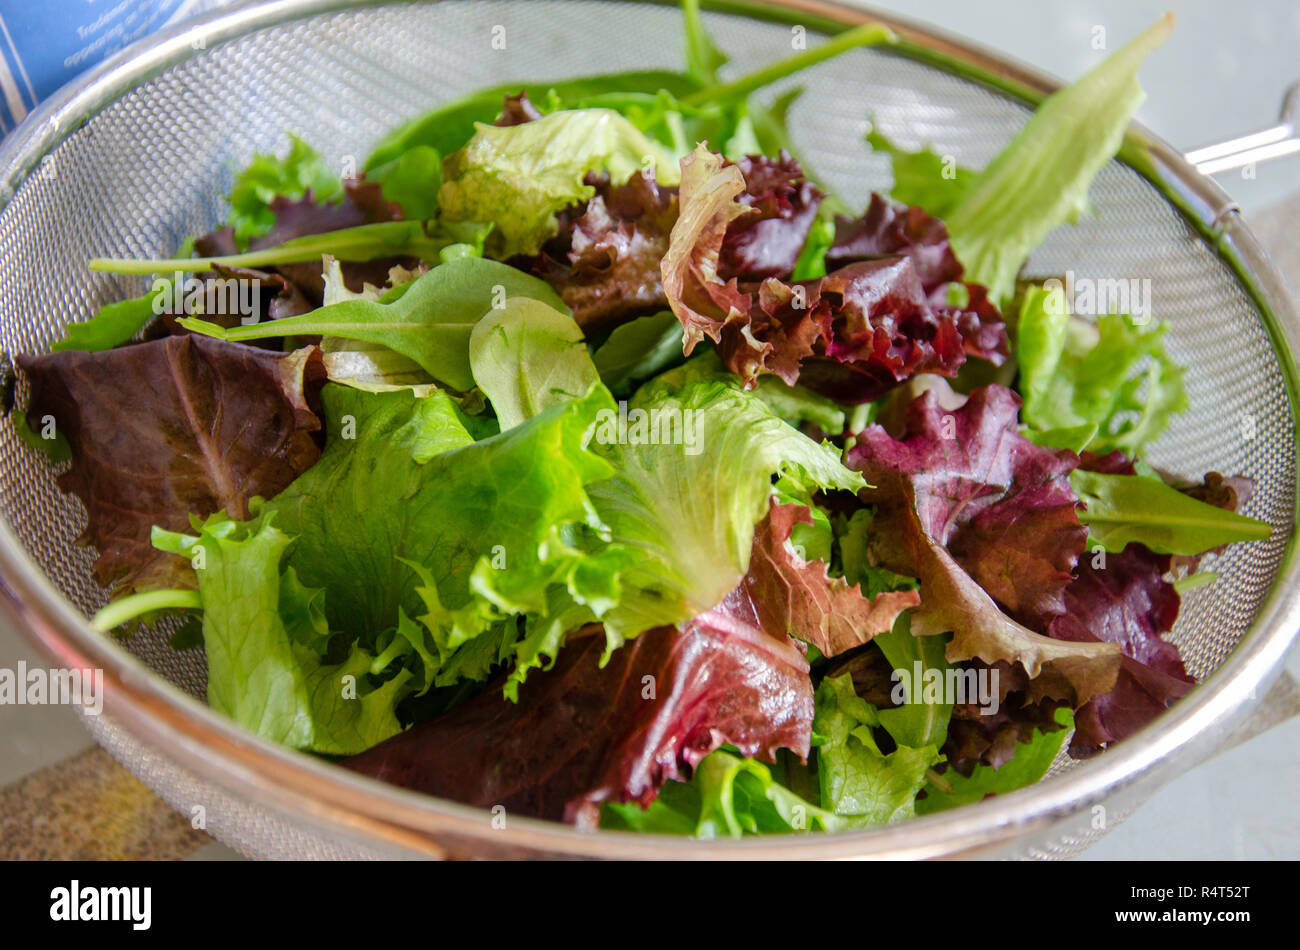 Un misto di foglie di insalata in una cullender come parte della preparazione di un pasto. Foto Stock